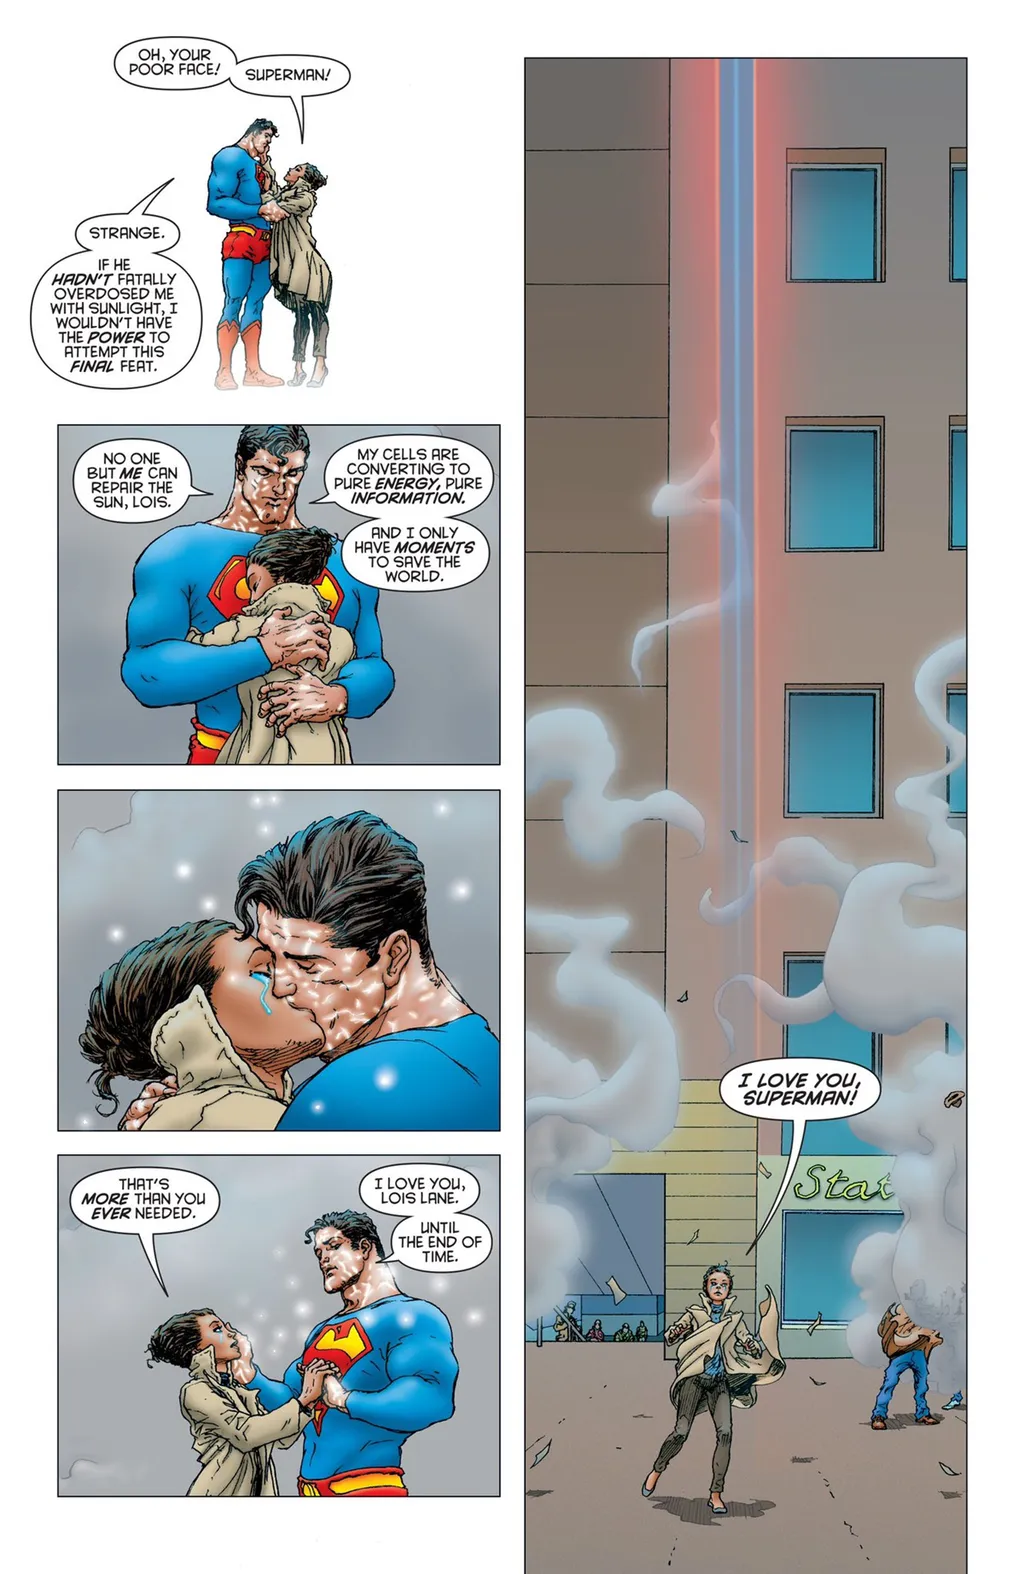 Fica difícil conter as lágrimas ao ver o sacríficio do Superman para acender o Sol em Grandes Astros: Superman (Imagem: Reprodução/DC Comics)